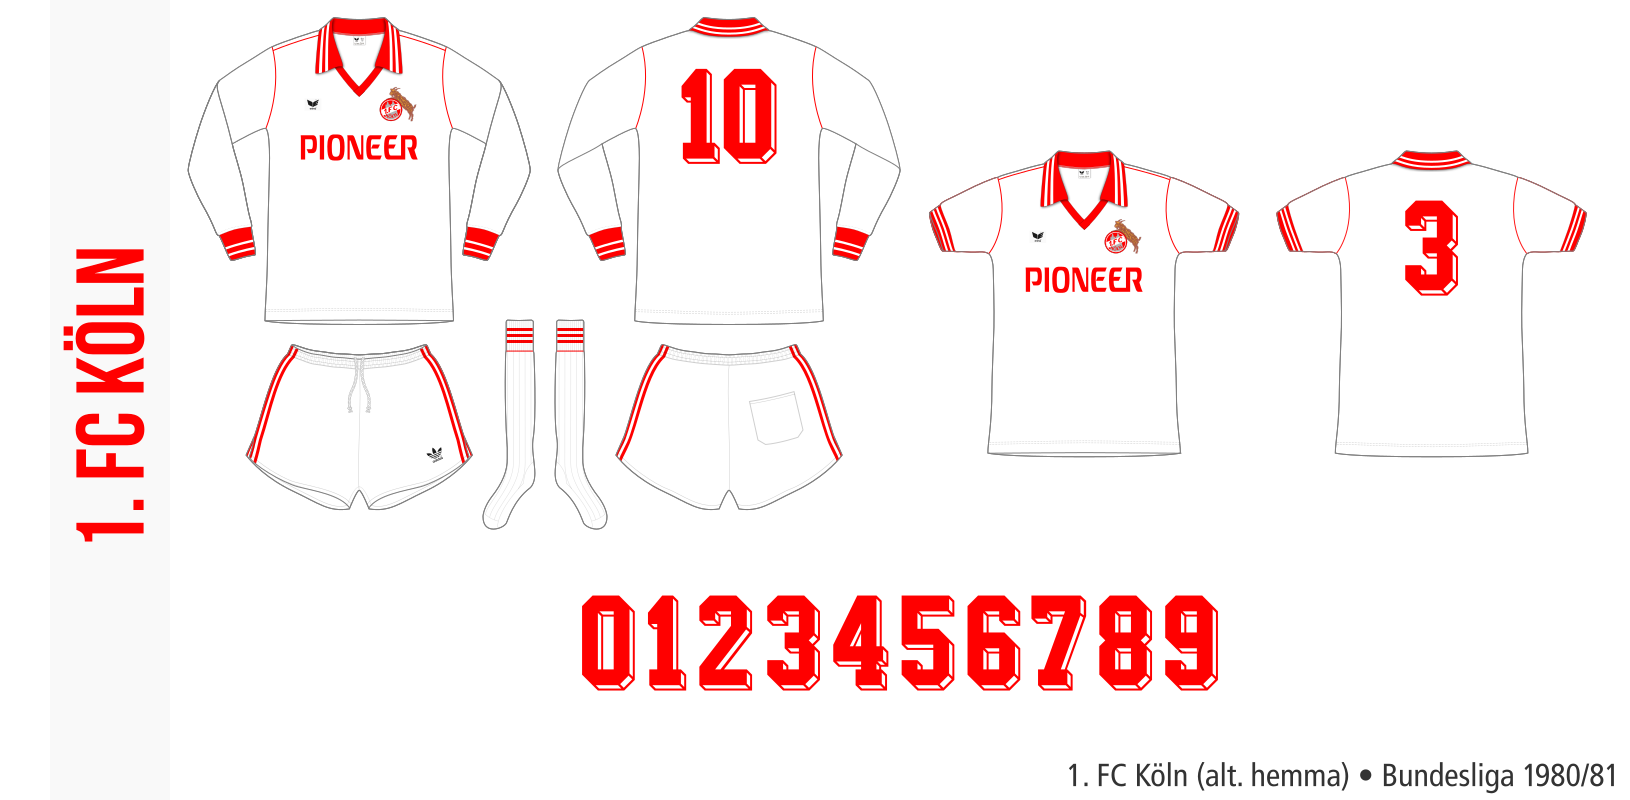 1. FC Köln 1980/81 (alternativ hemma)